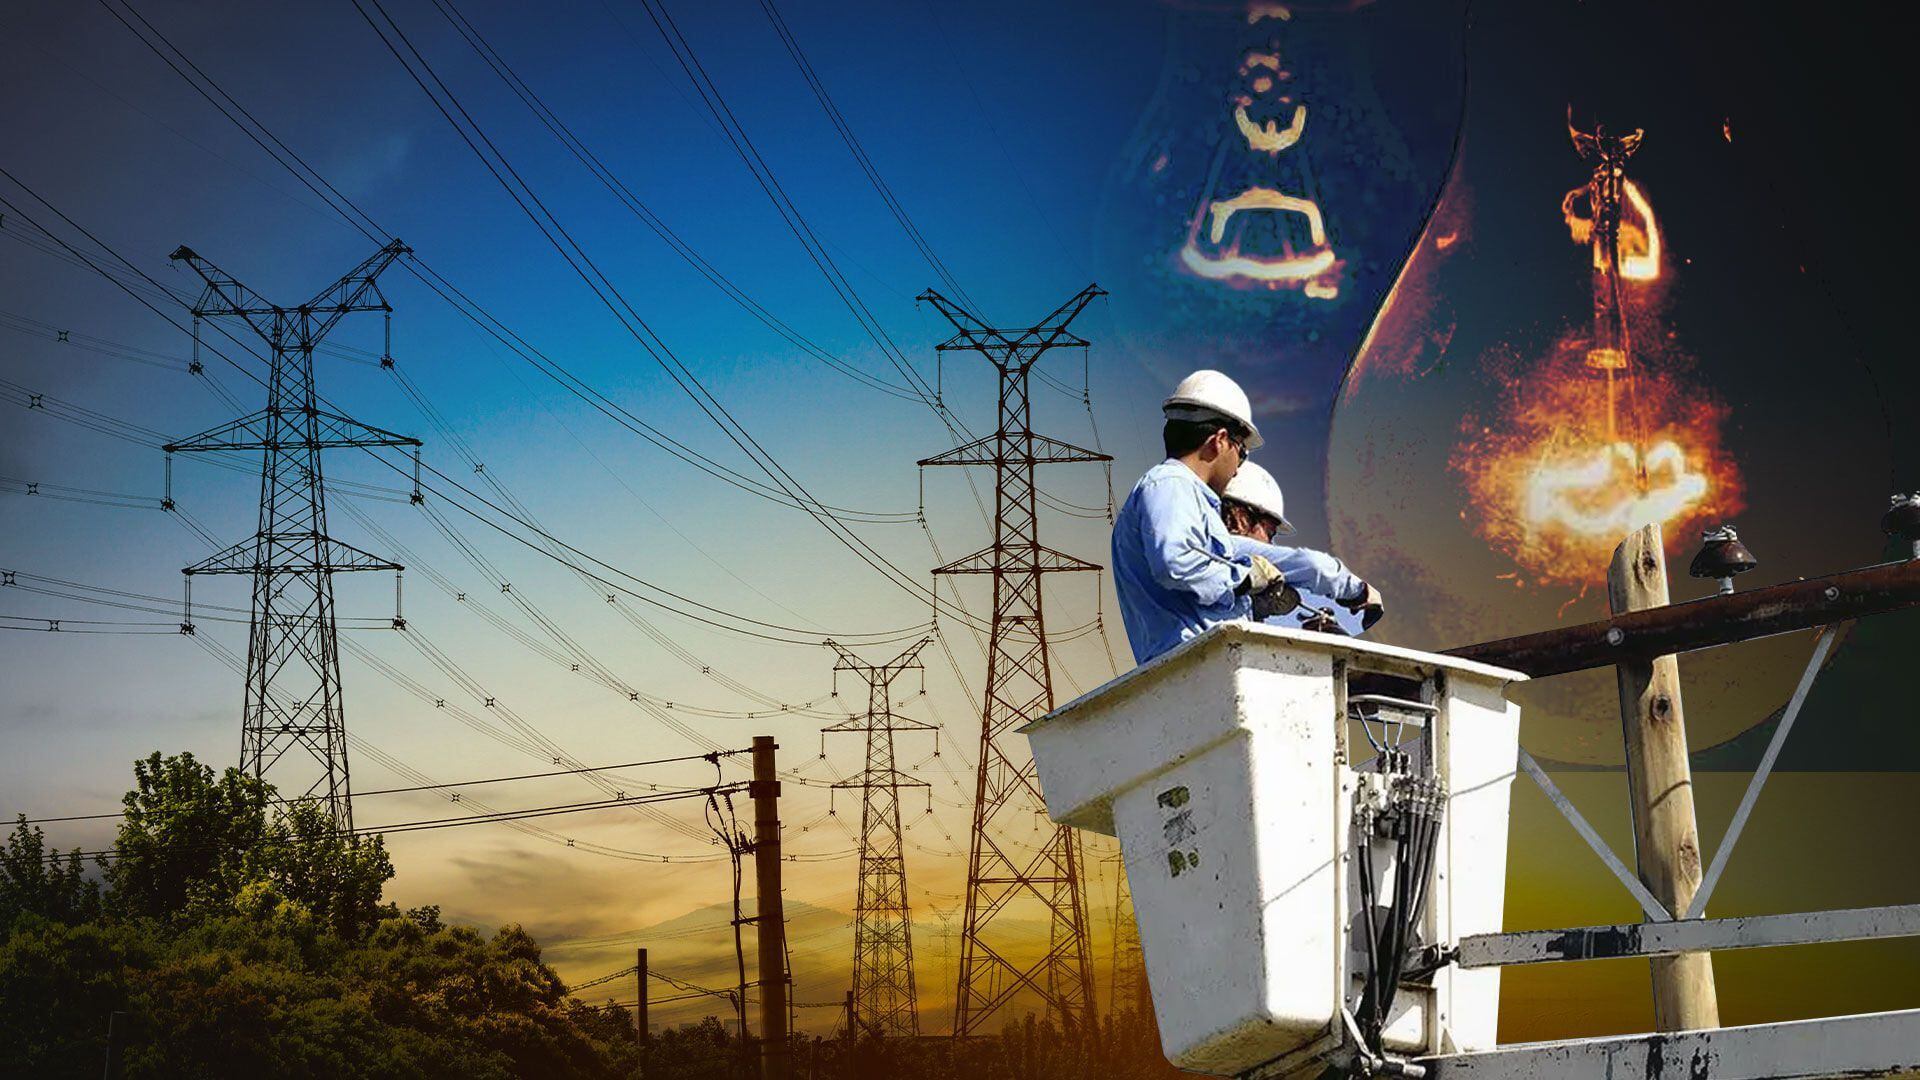 ESSA suspende el suministro de energía eléctrica en la zona para realizar trabajos de mantenimiento y garantizar un buen servicio a sus clientes (Jovani Pérez/Infobae)